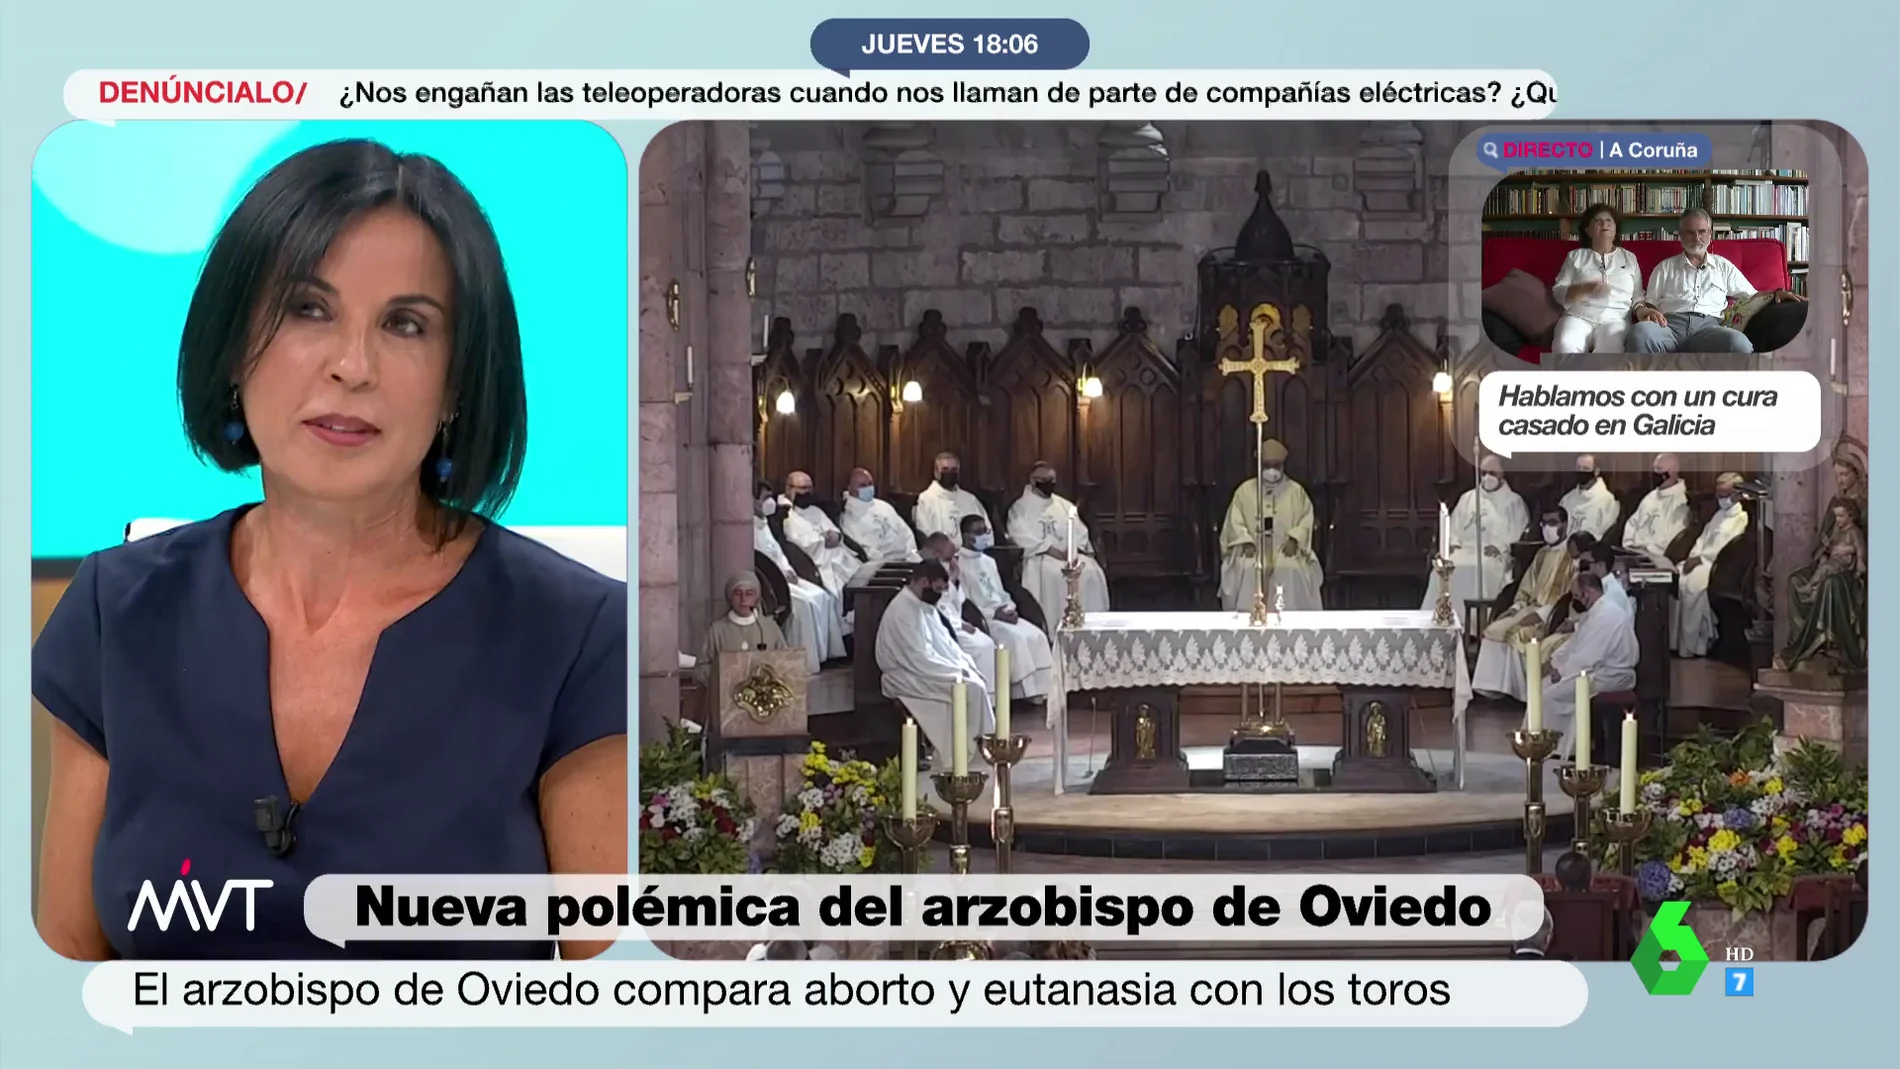 Beatriz de Vicente desmonta las palabras del arzobispo de Oviedo